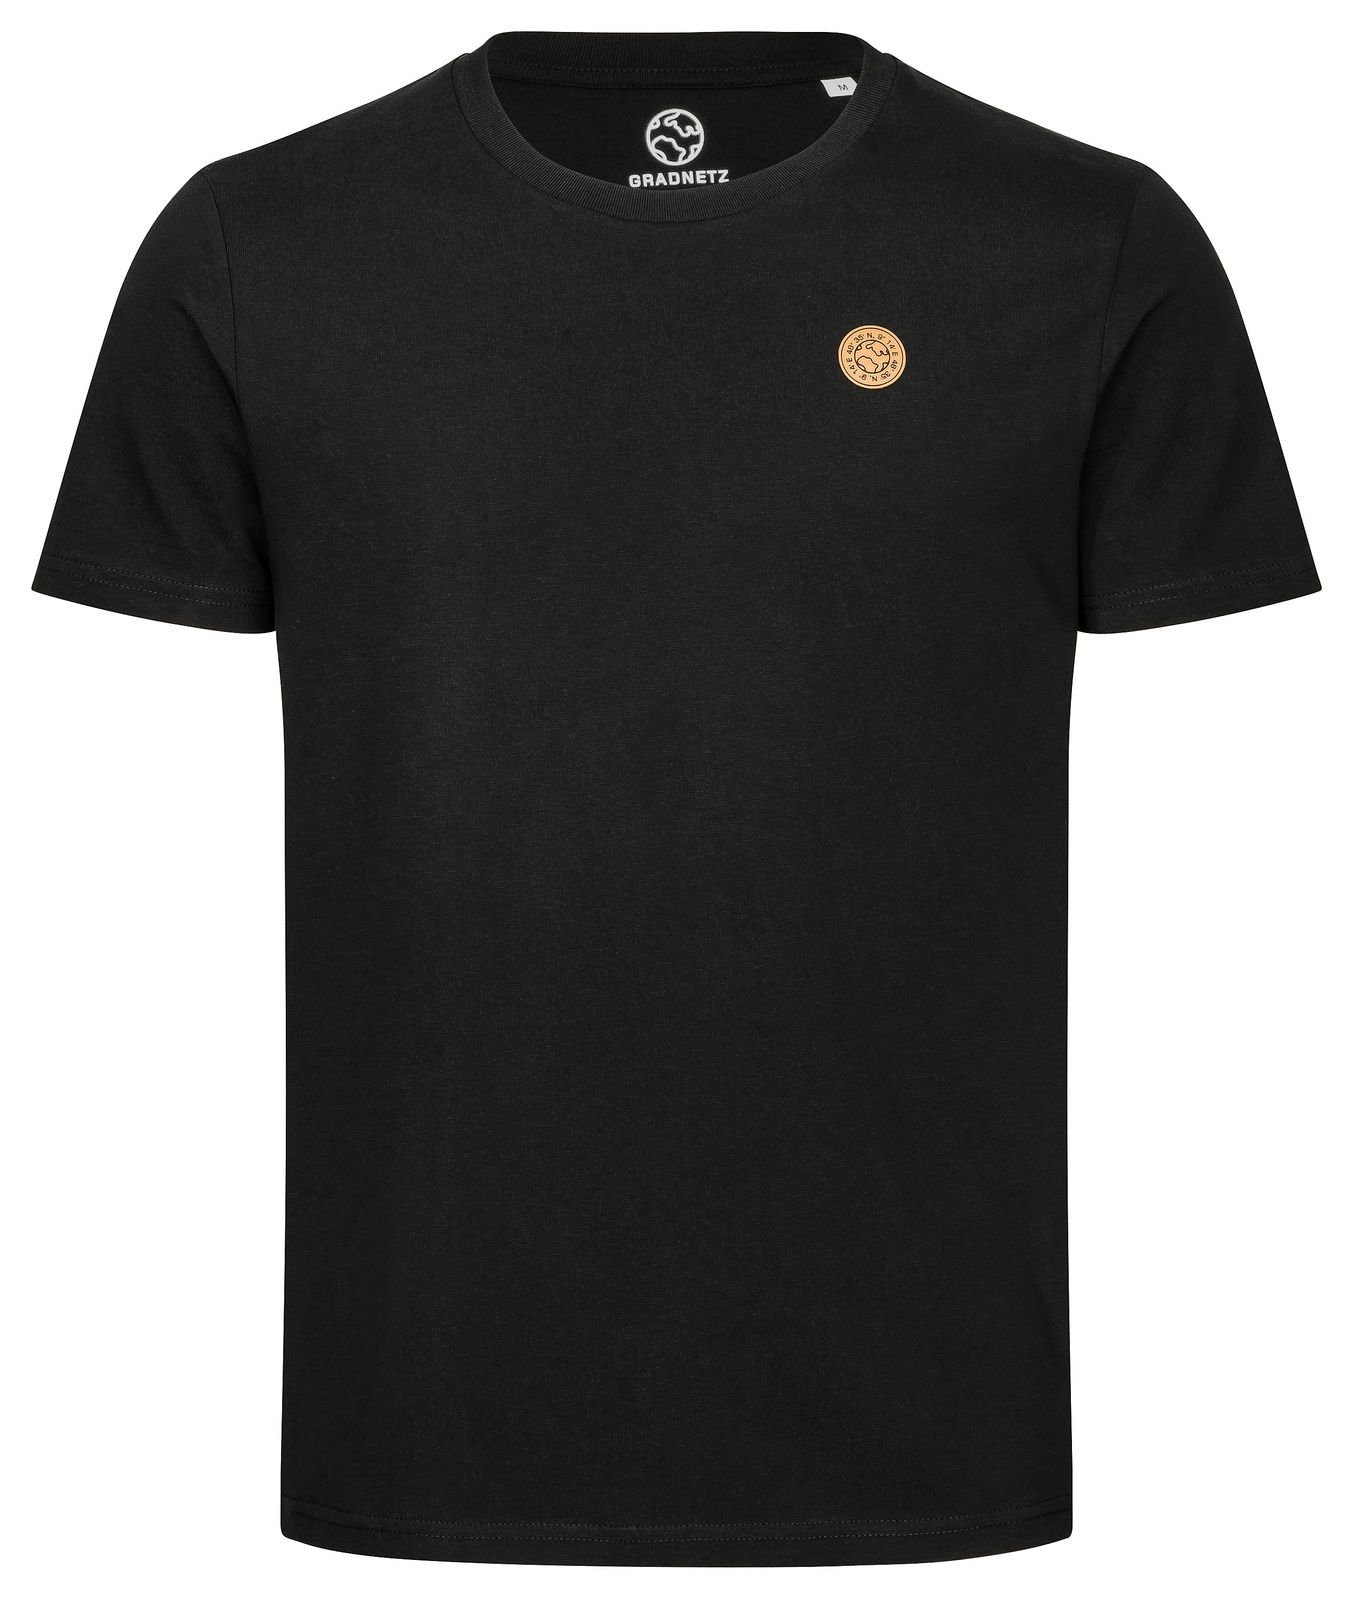 Gradnetz T-Shirt nachhaltig basic & schwarz fair 100% unisex leather Biobaumwolle